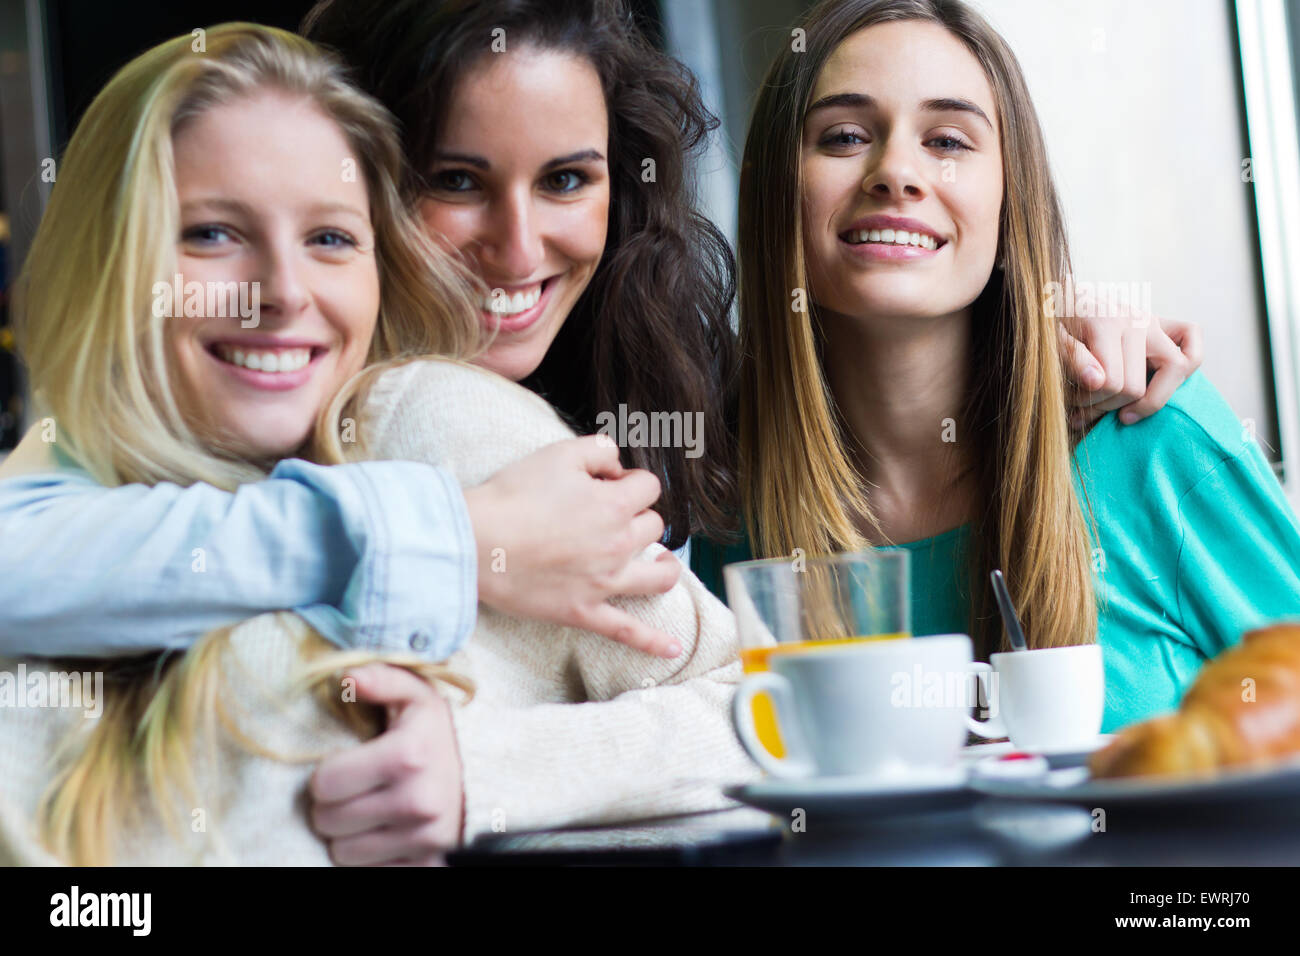 Porträt von drei jungen Frauen, die Kaffeepause Stockfoto